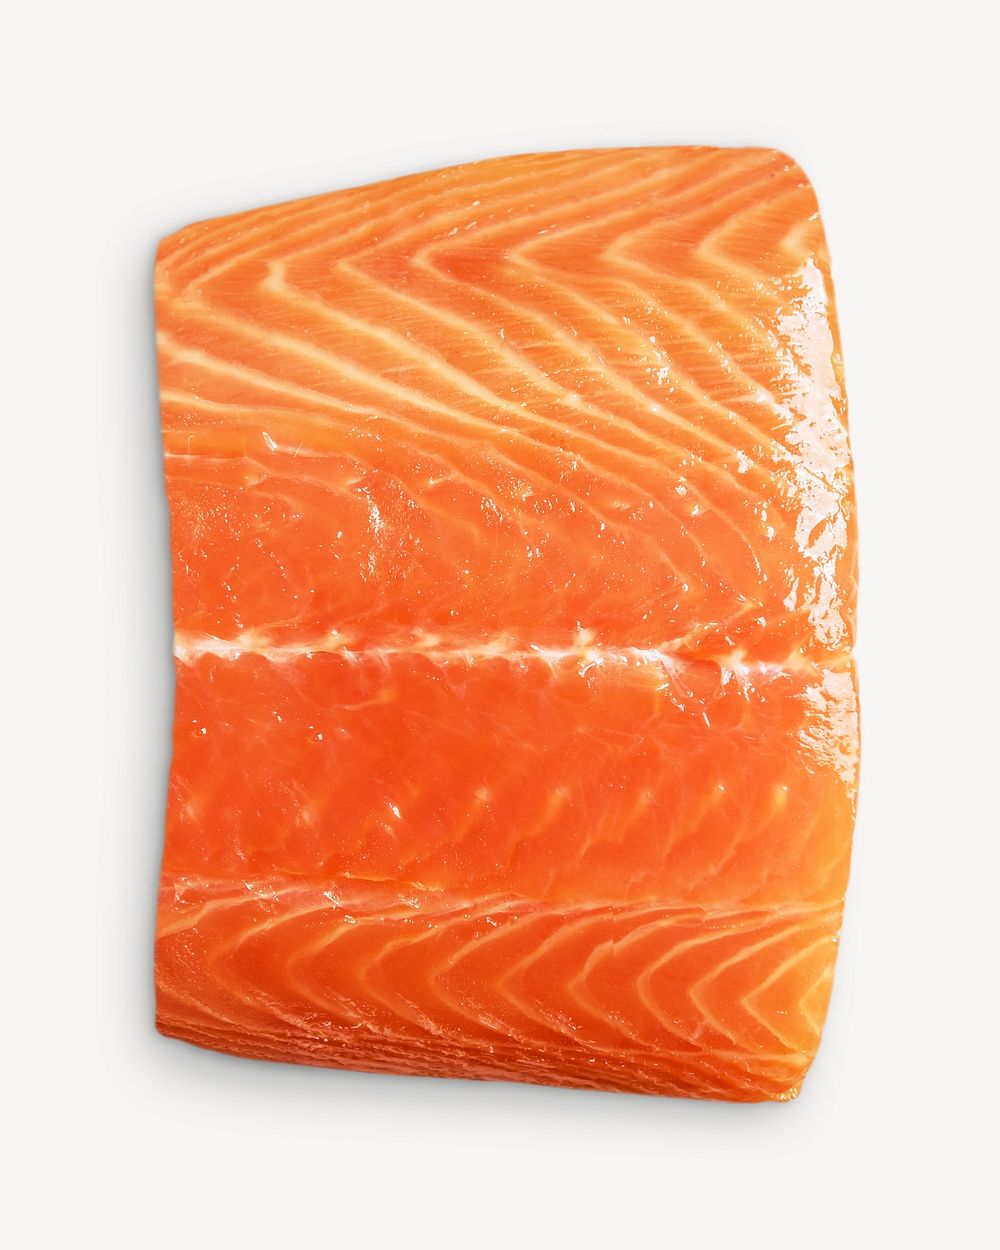 Raw salmon image on white